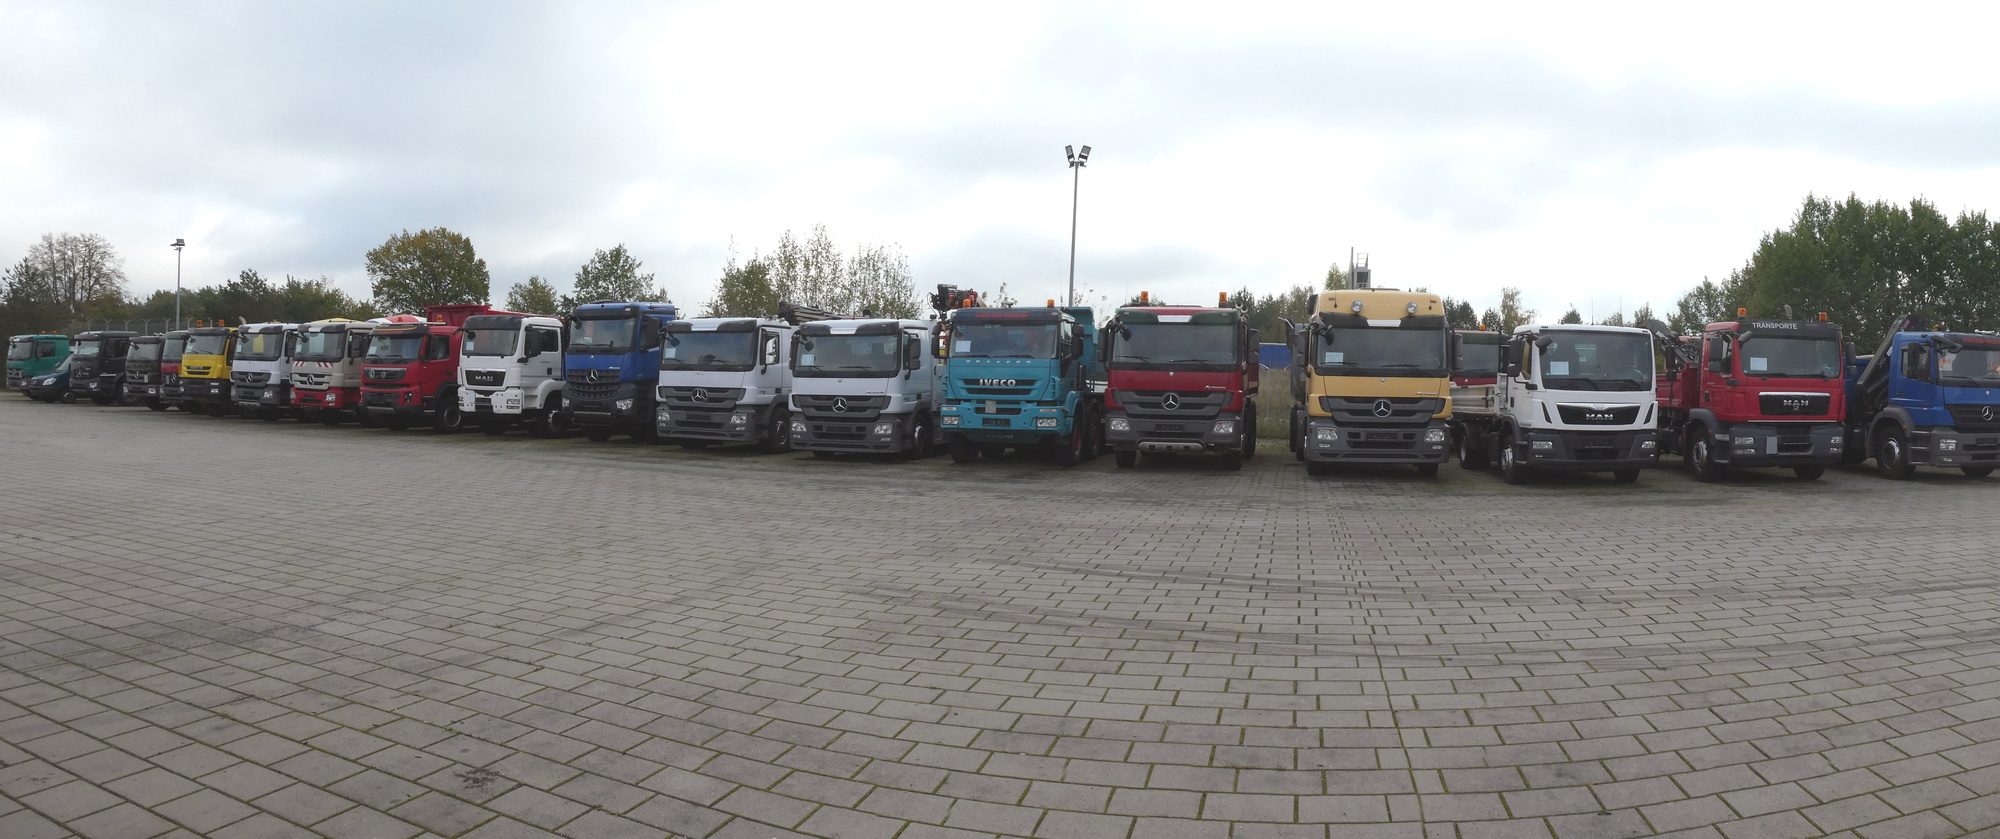 Henze Truck GmbH - أنصاف مقطورات undefined: صورة 1